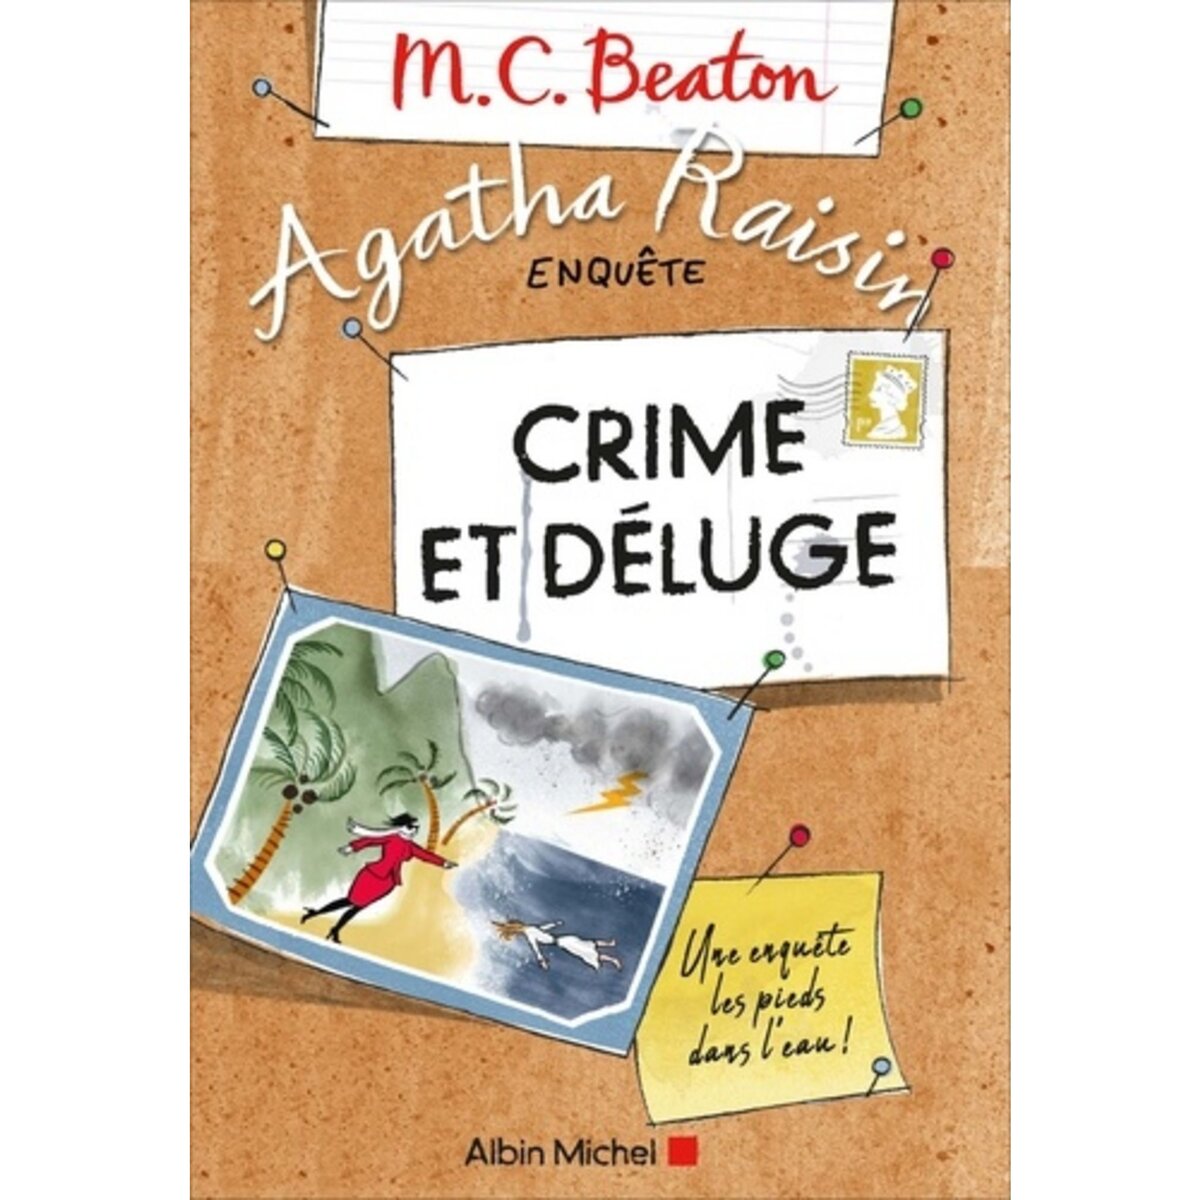  AGATHA RAISIN ENQUETE TOME 12 : CRIME ET DELUGE, Beaton M-C